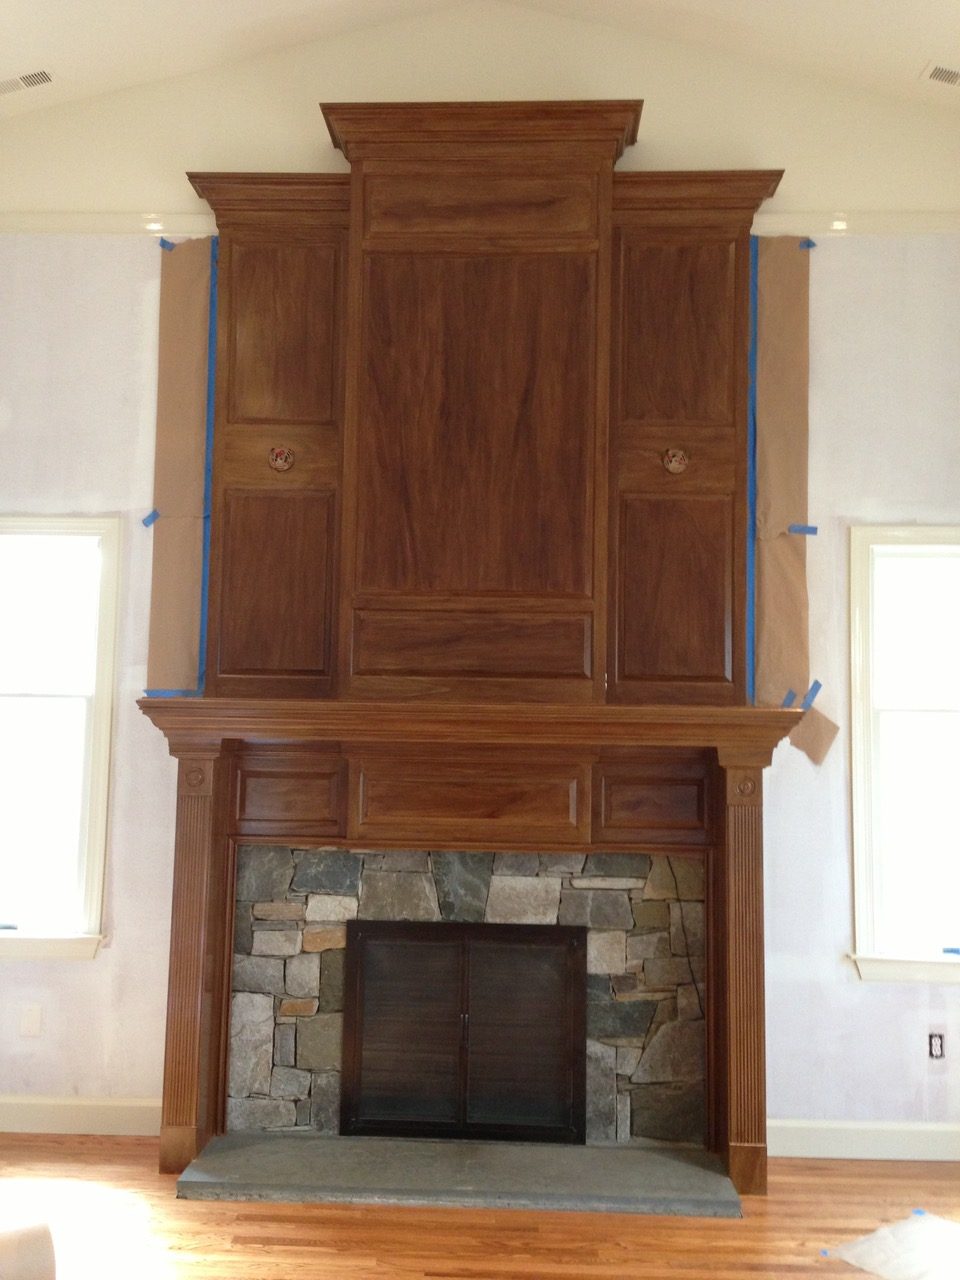 Arlington family room fireplace with new mahogany faux finish